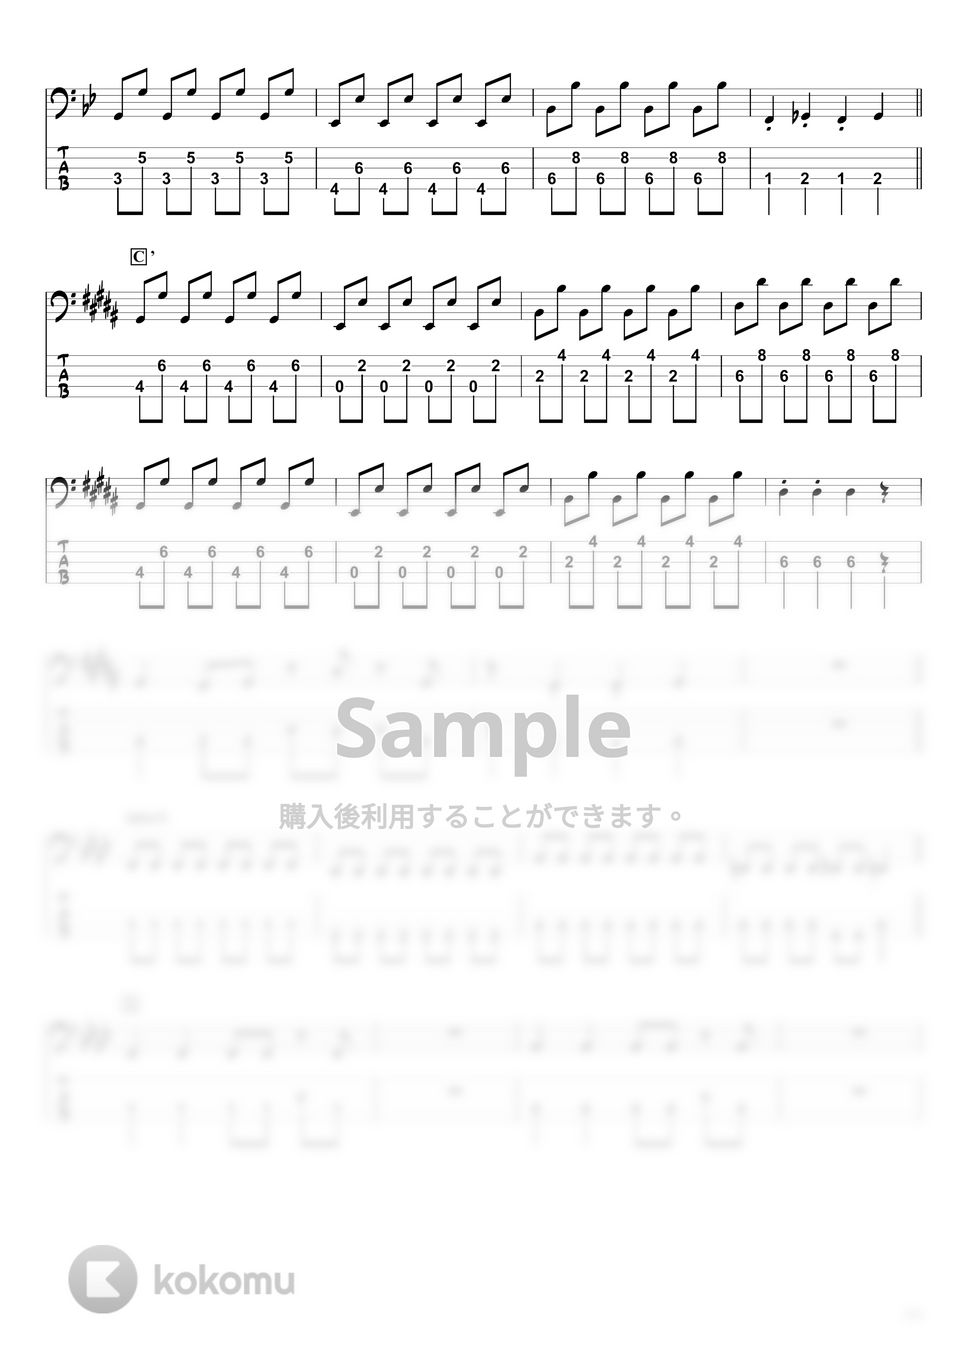 DECO*27 x ピノキオピー - デビルじゃないもん (ベースTAB譜☆5弦ベース対応) by swbass